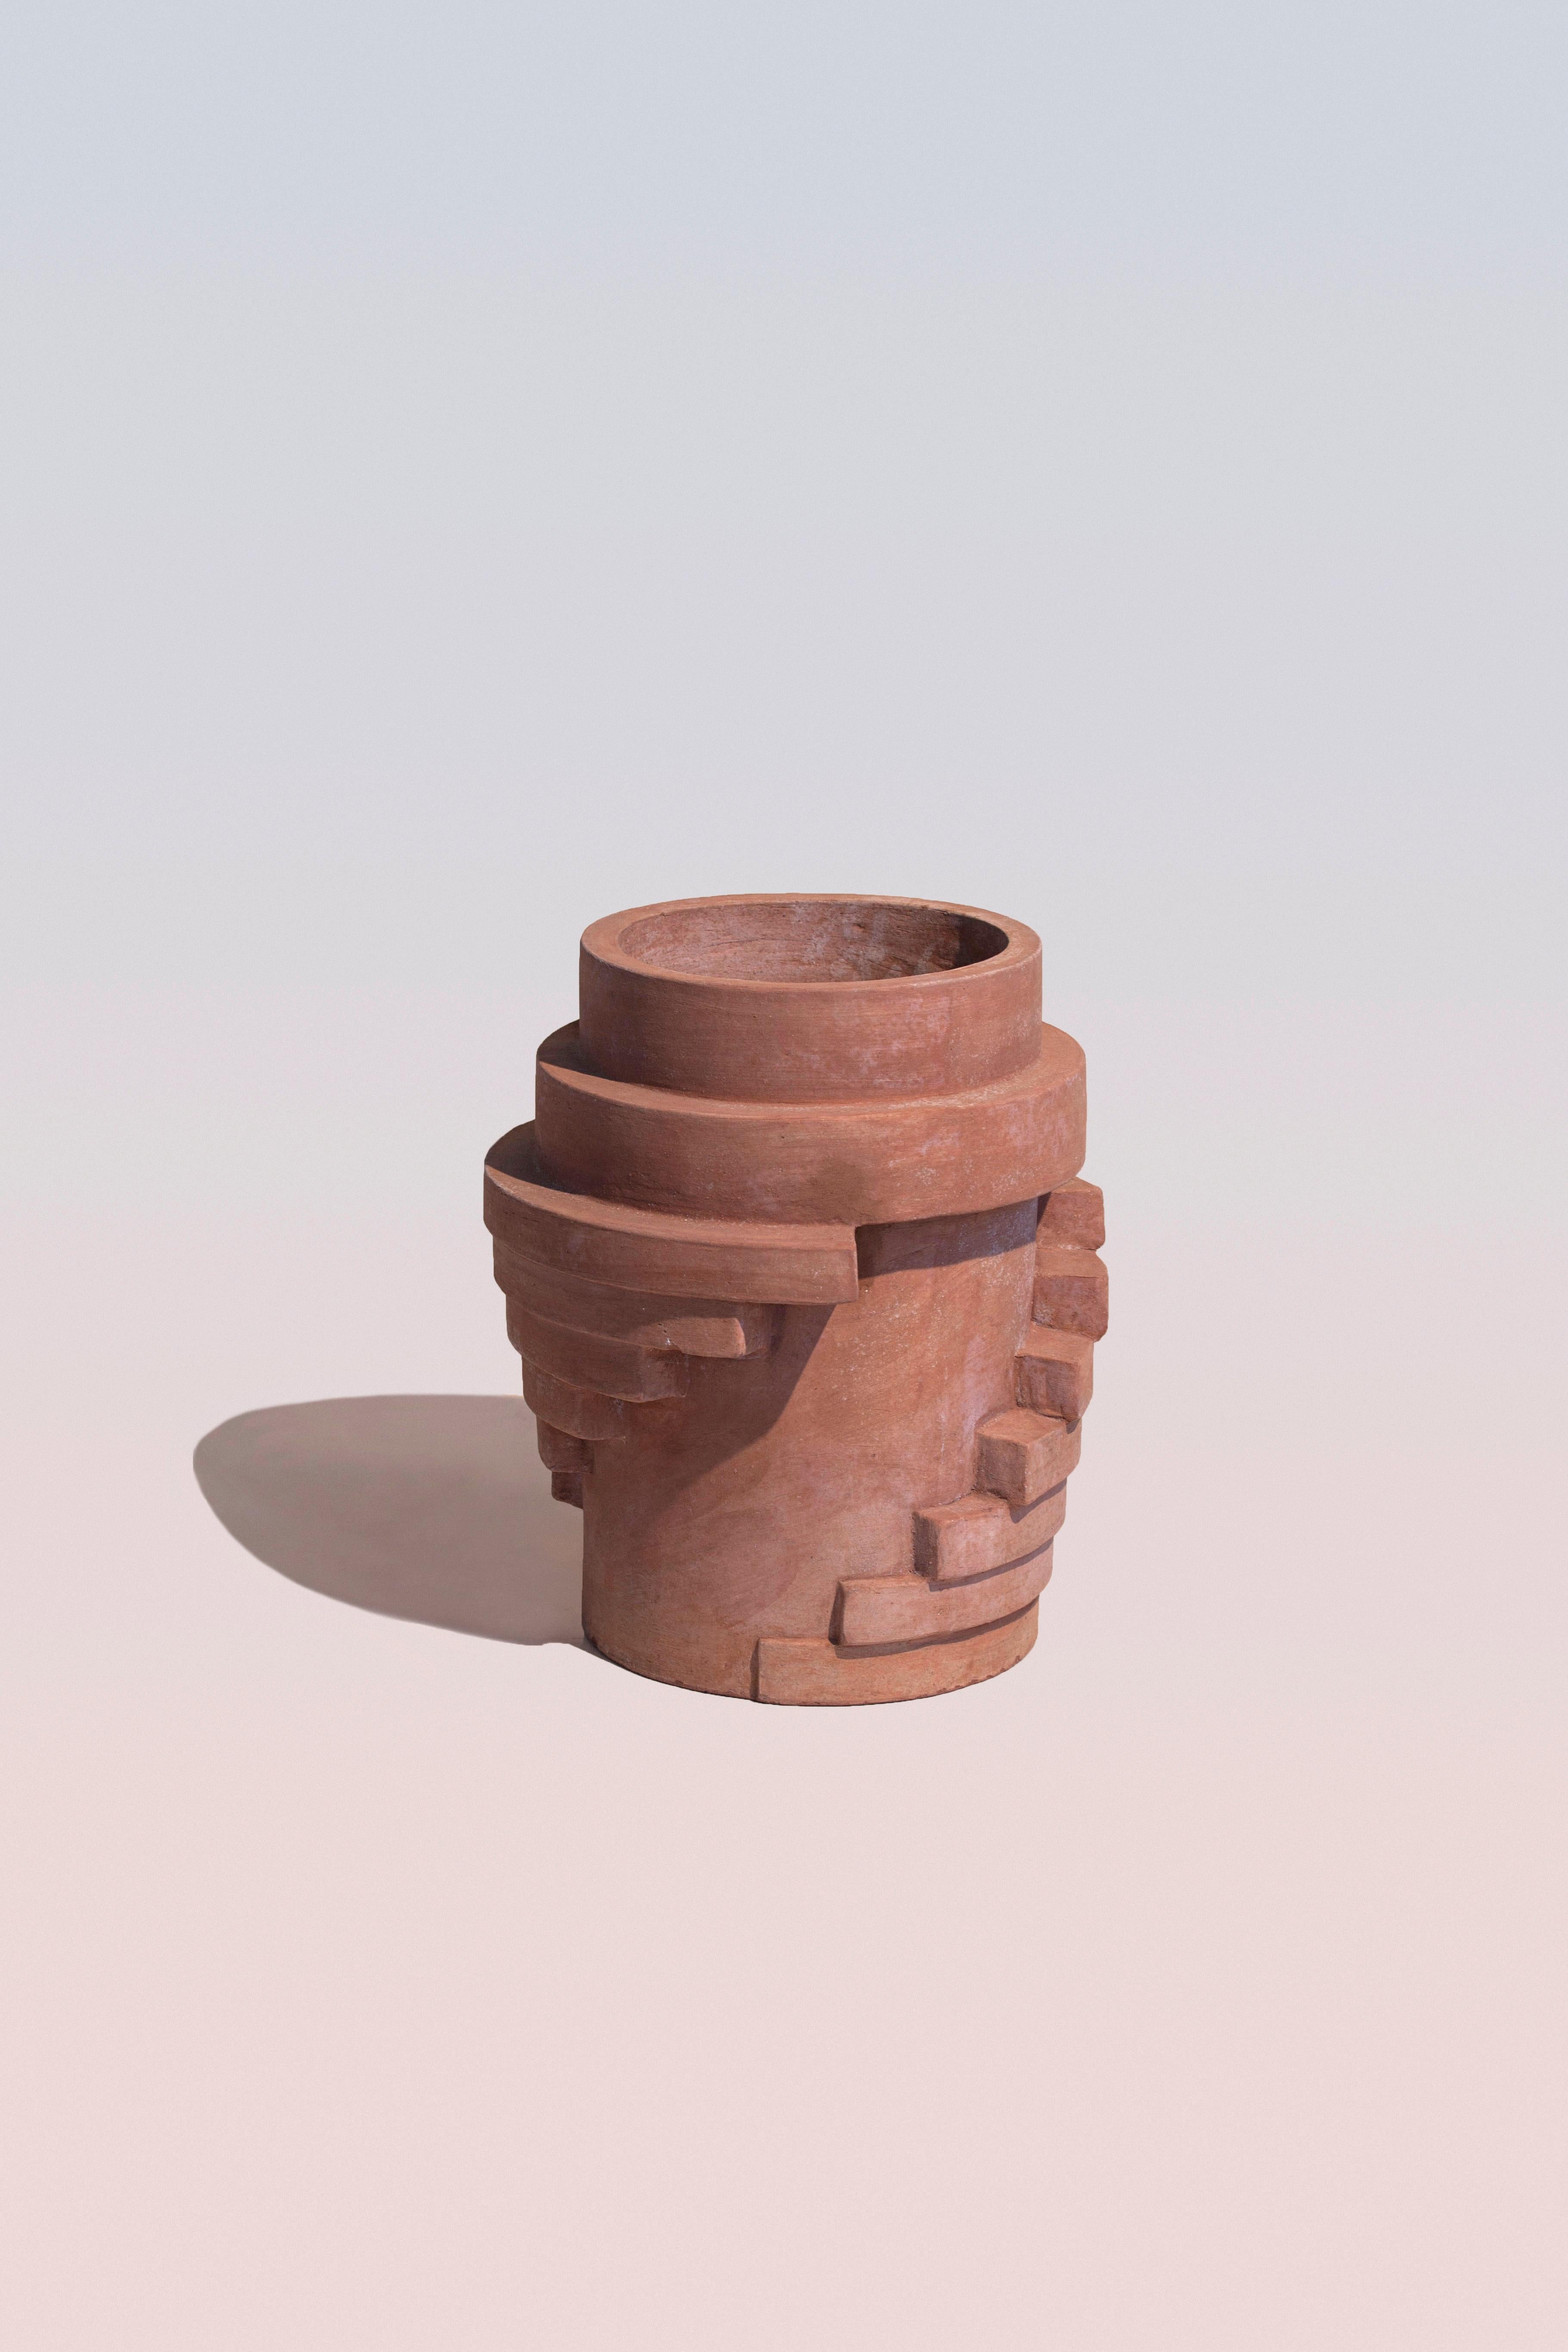 Handmade terracotta vase by Poggi Ugo.